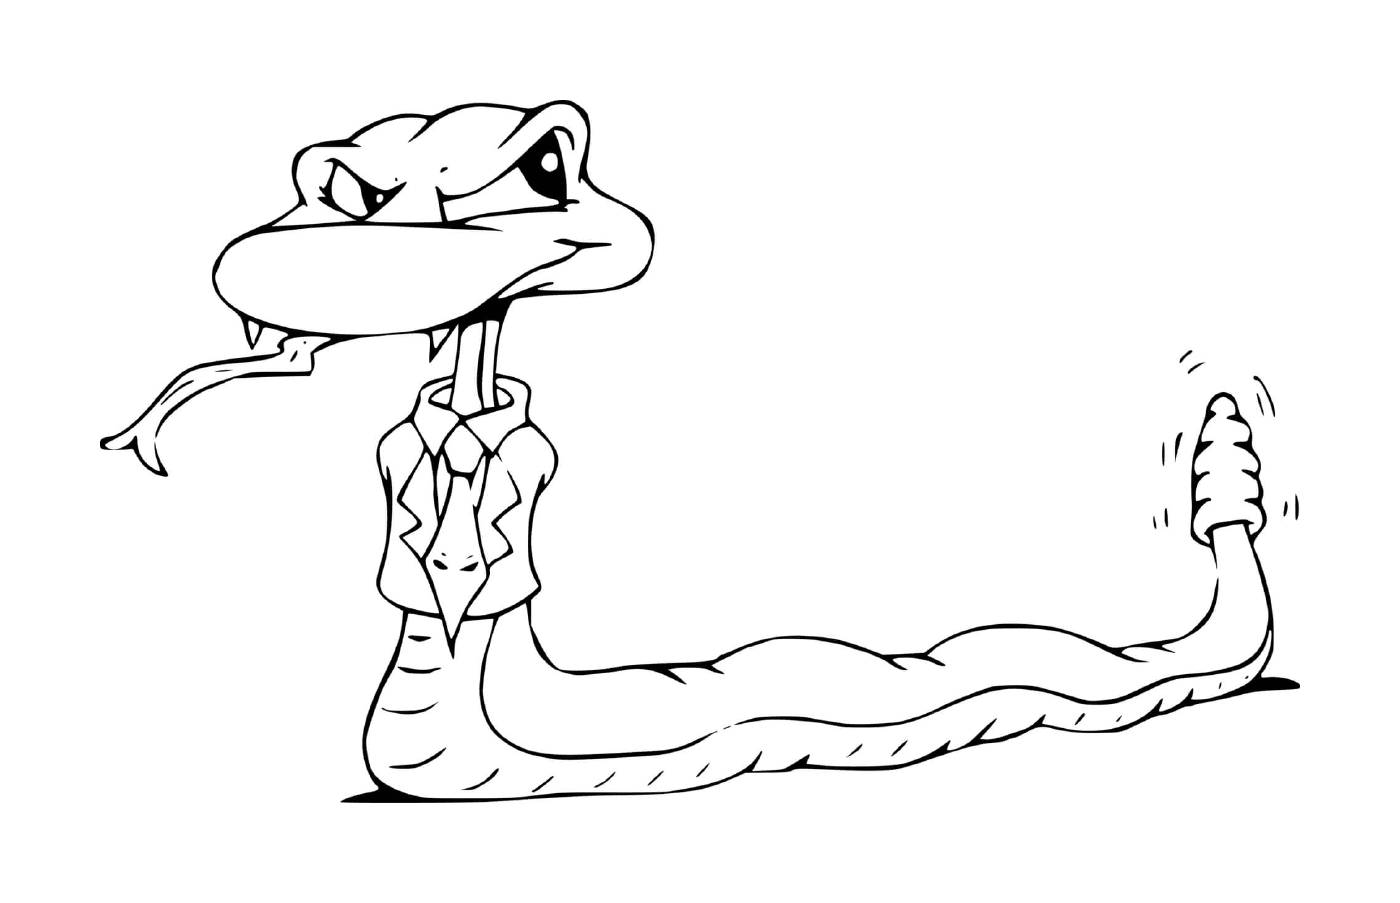  Змея с галстуком 